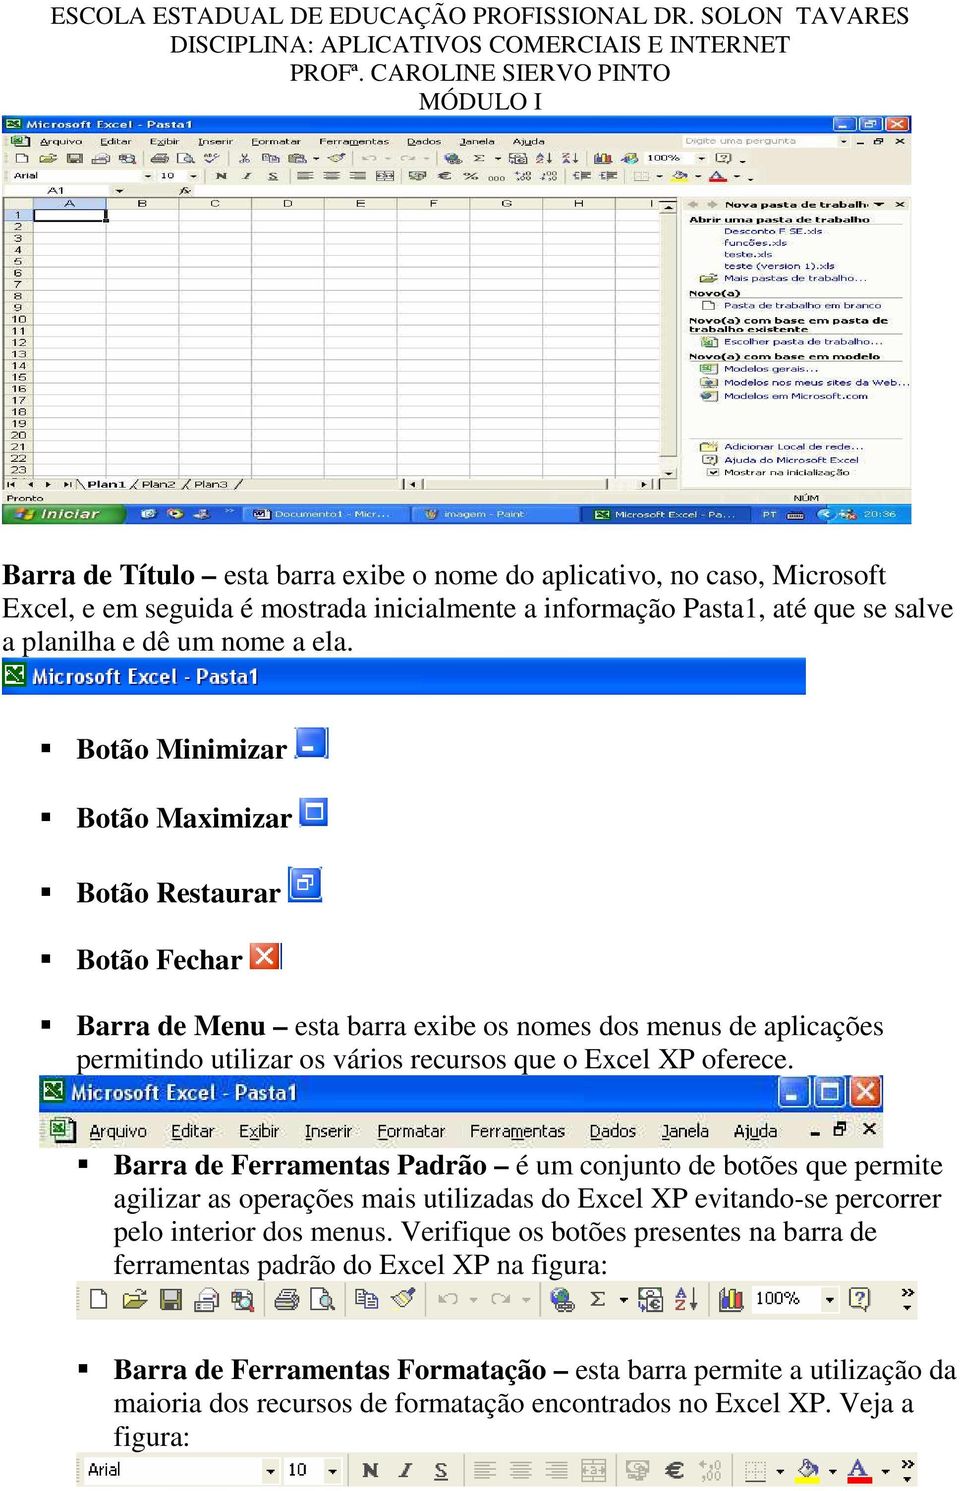 Barra de Ferramentas Padrão é um conjunto de botões que permite agilizar as operações mais utilizadas do Excel XP evitando-se percorrer pelo interior dos menus.